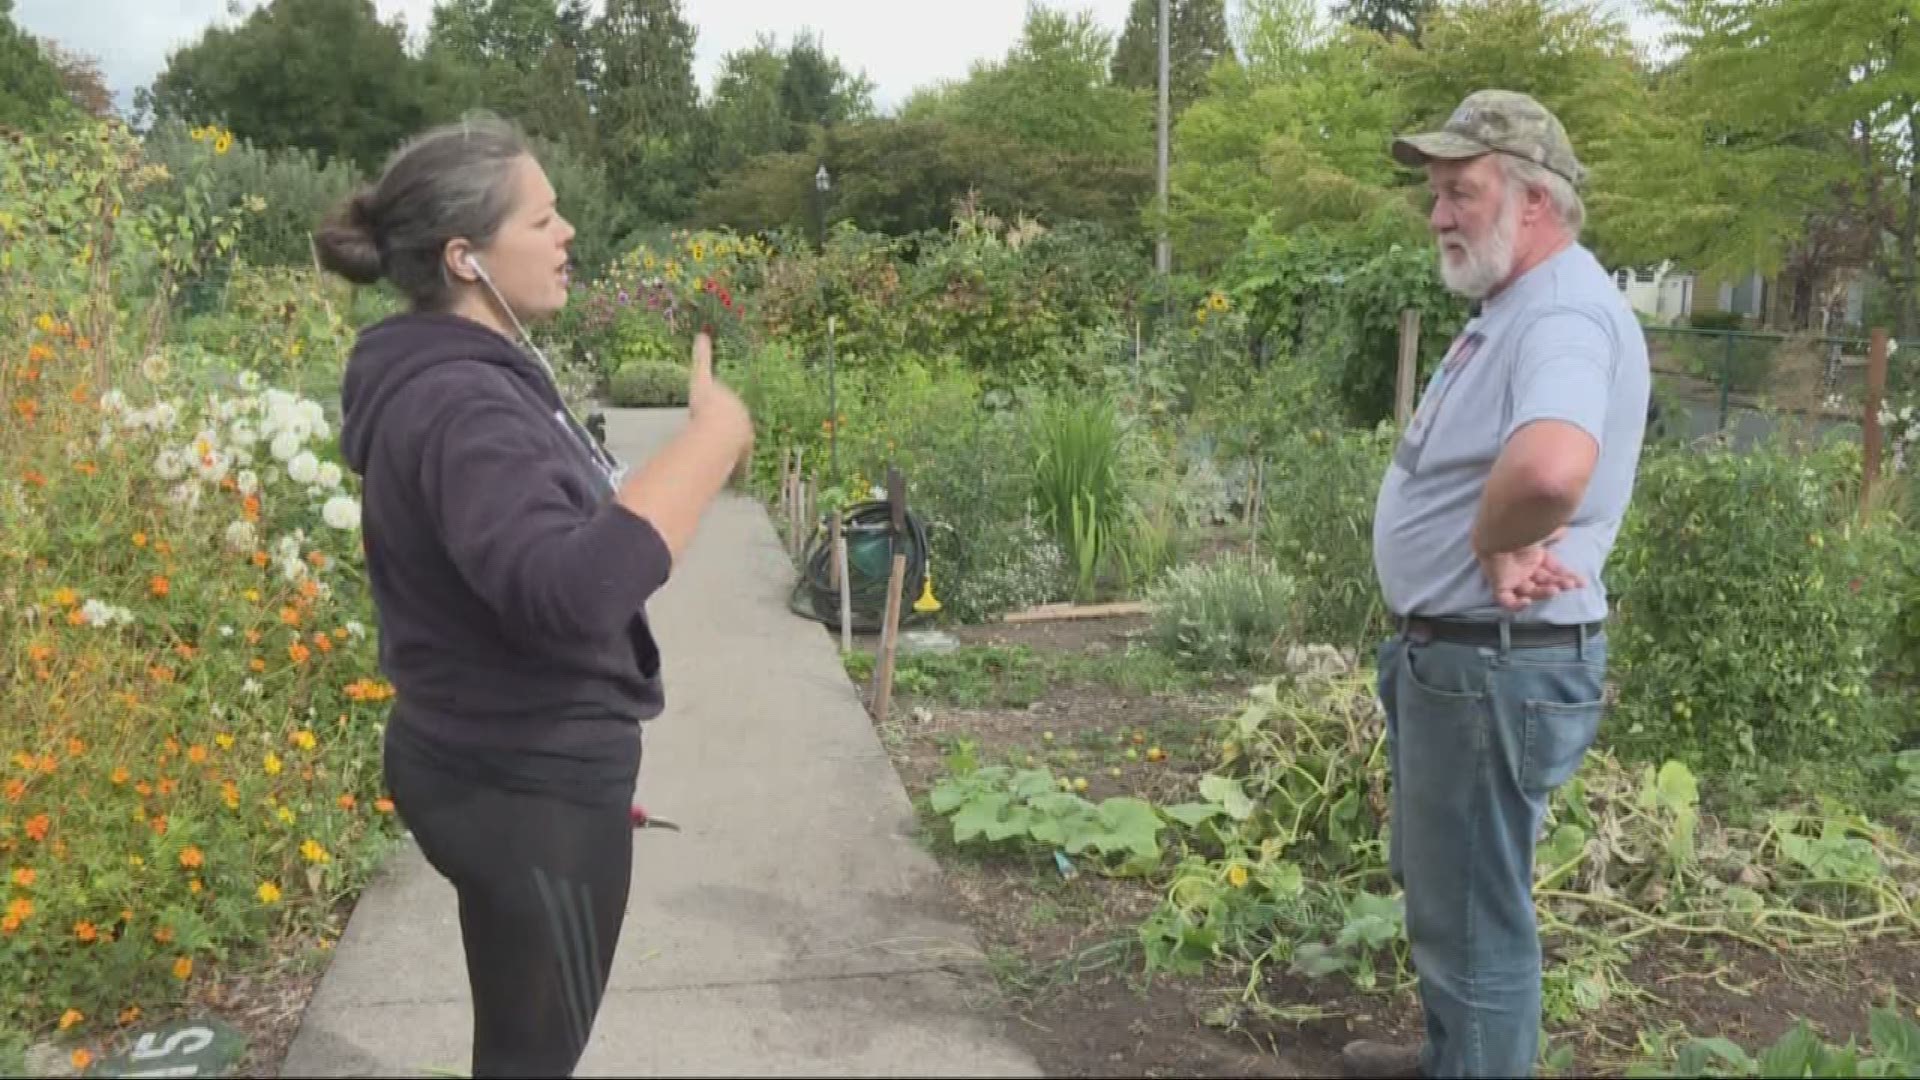 Garden thefts in a Portland community spark a homeless debate between neighbors.